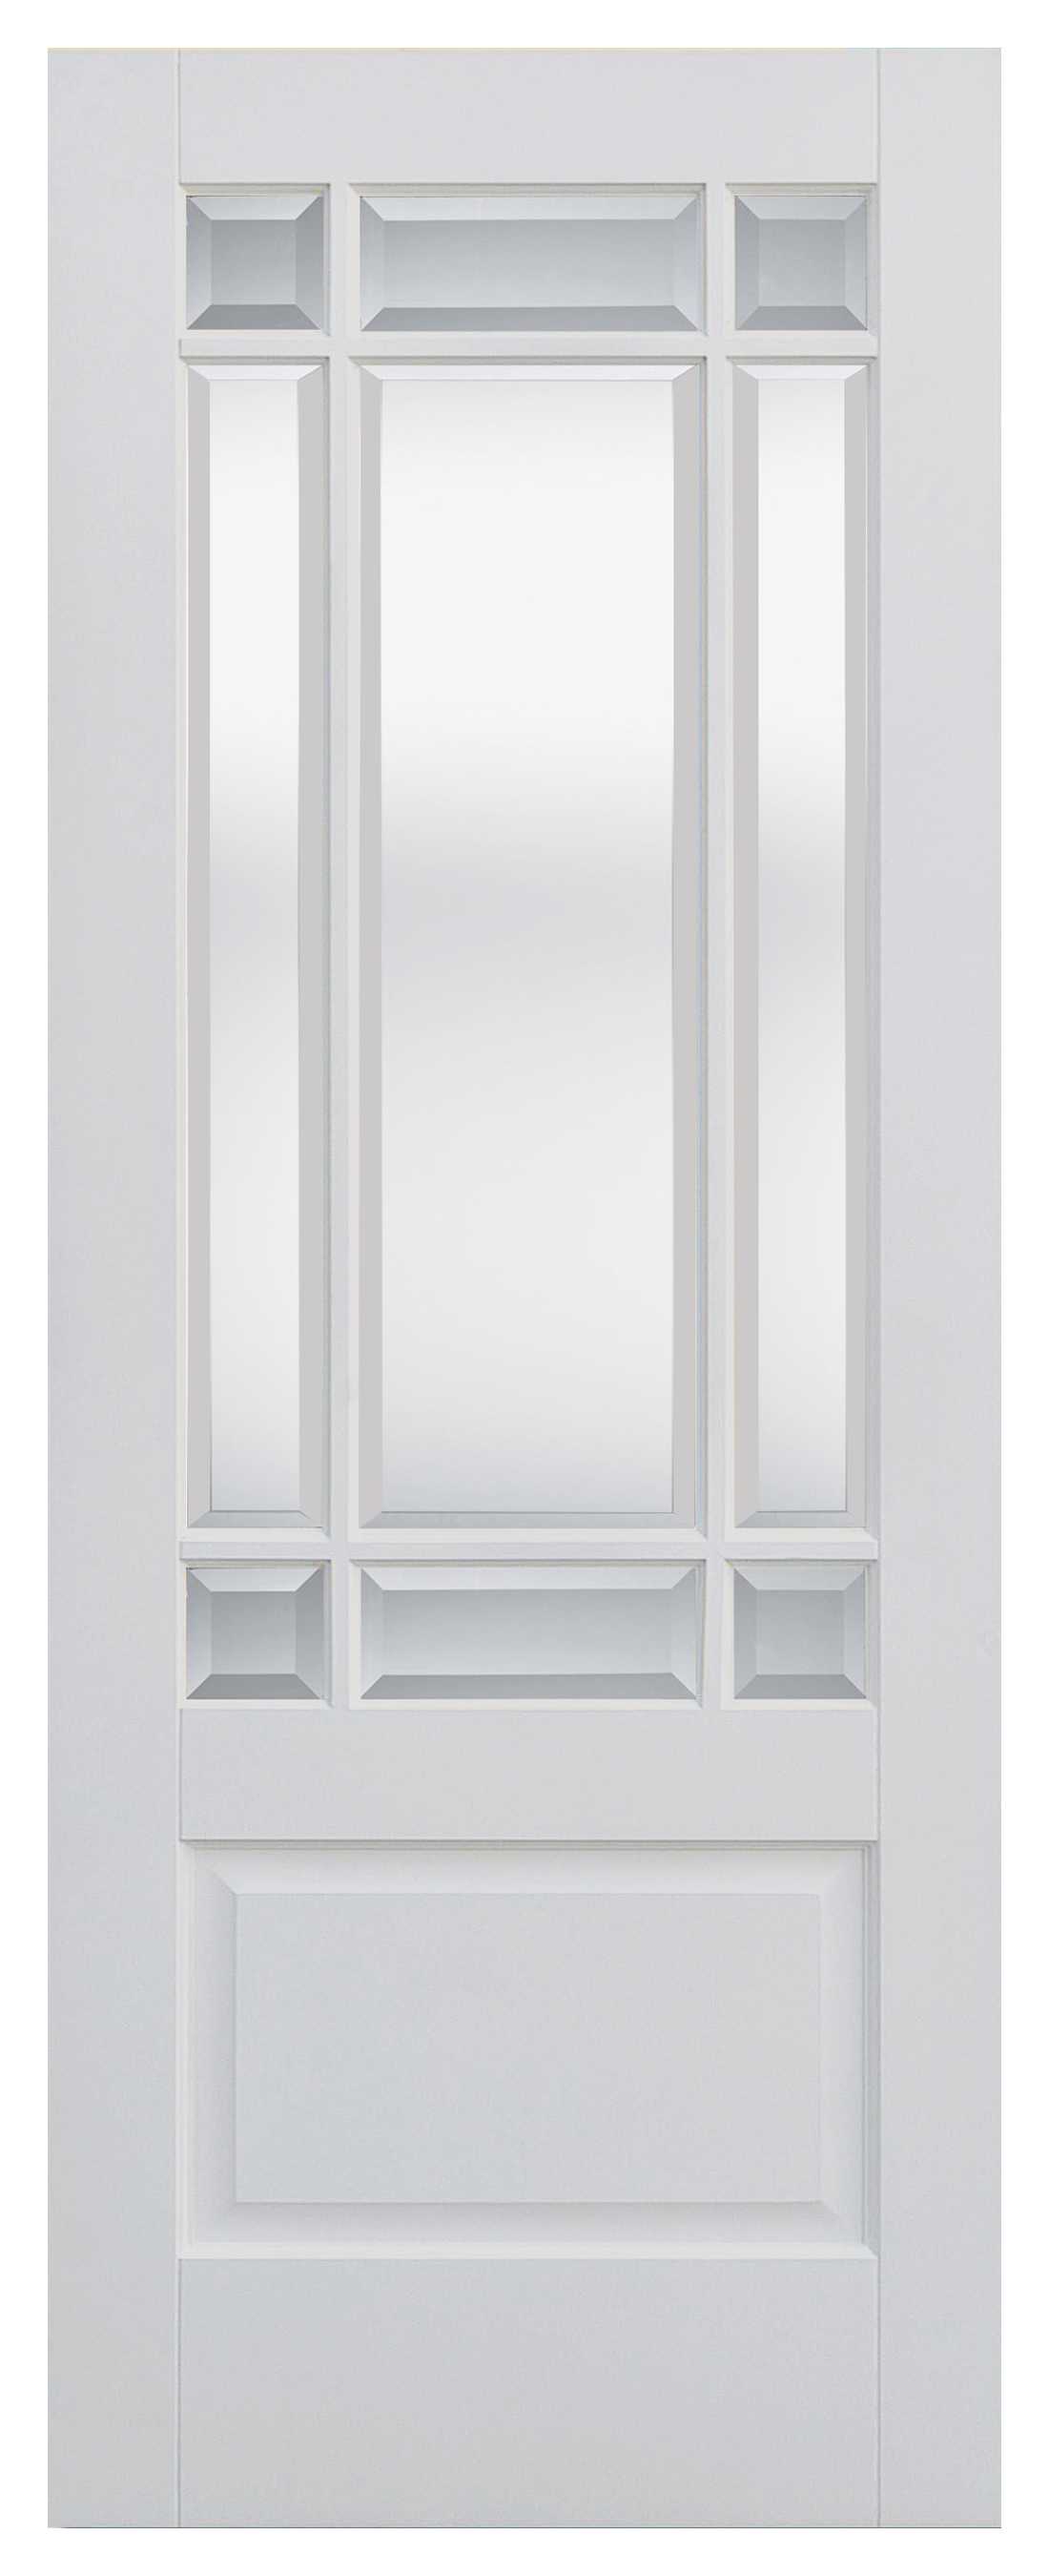 LPD Internal Downham Clear Glazed Primed White Door - 1981mm